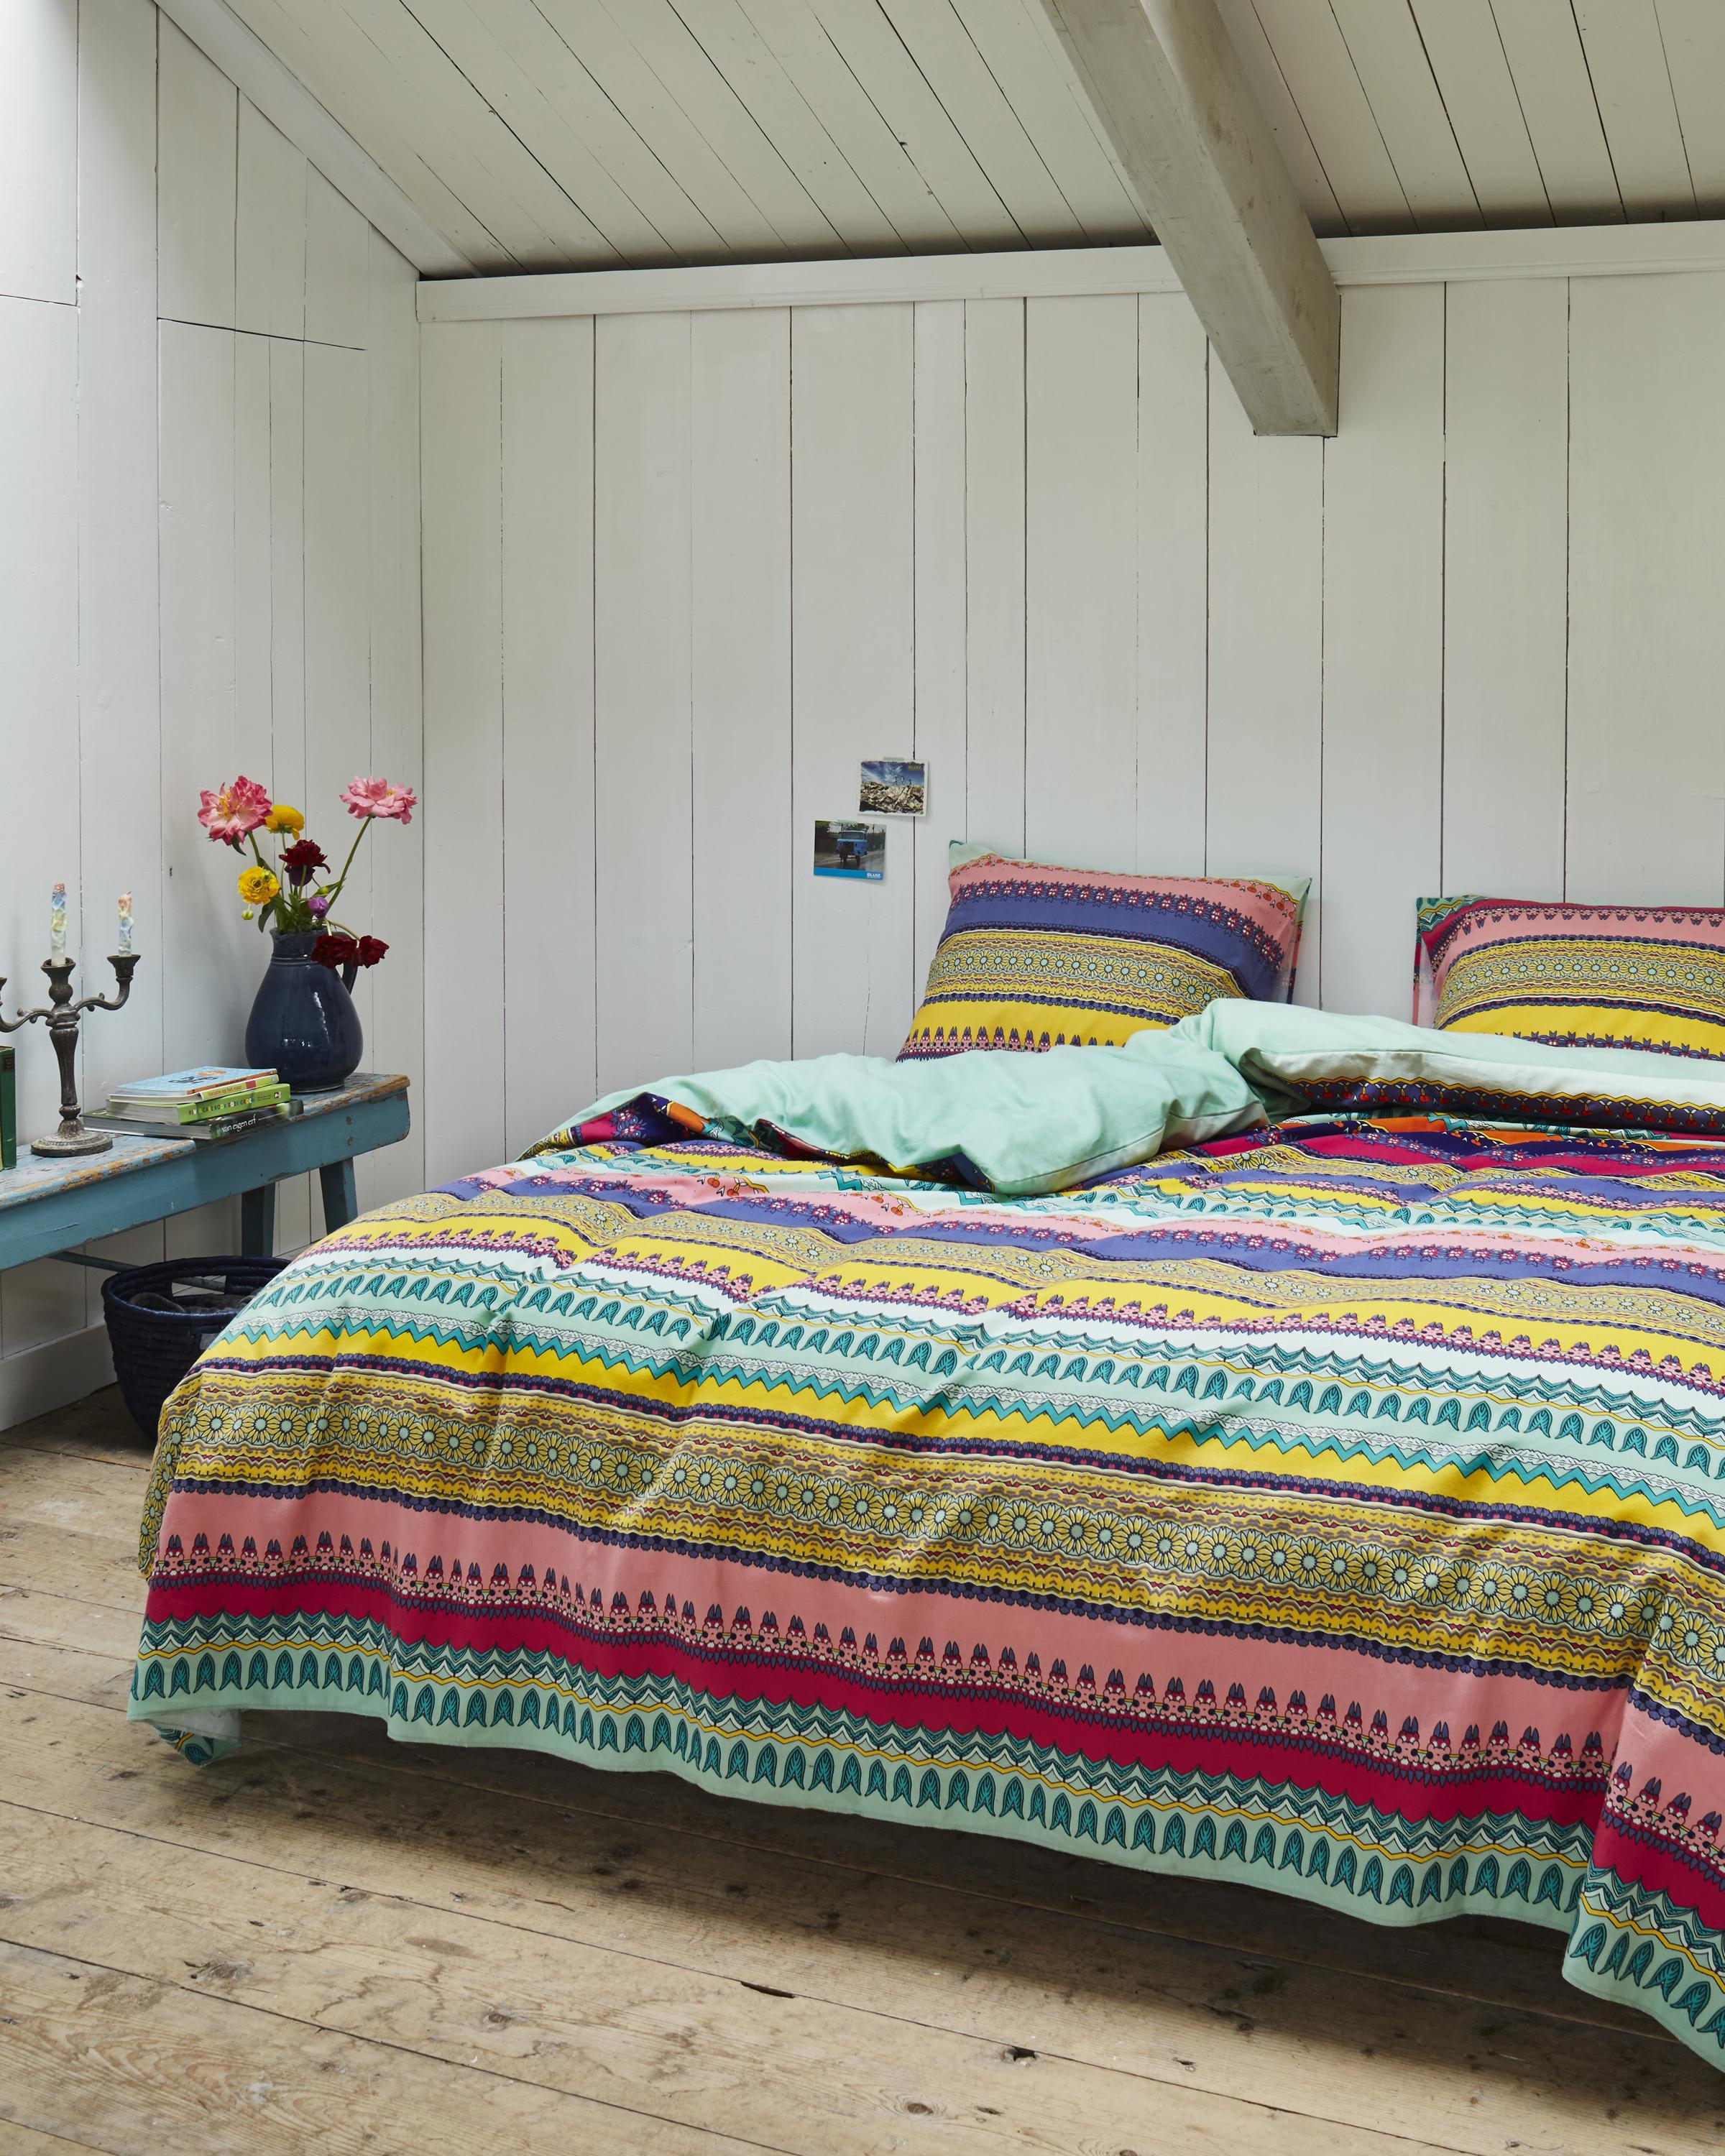 Schlafzimmer im Bohemian Style gestalten #bettwäsche #buntebettwäsche #zimmergestaltung ©Wayfair